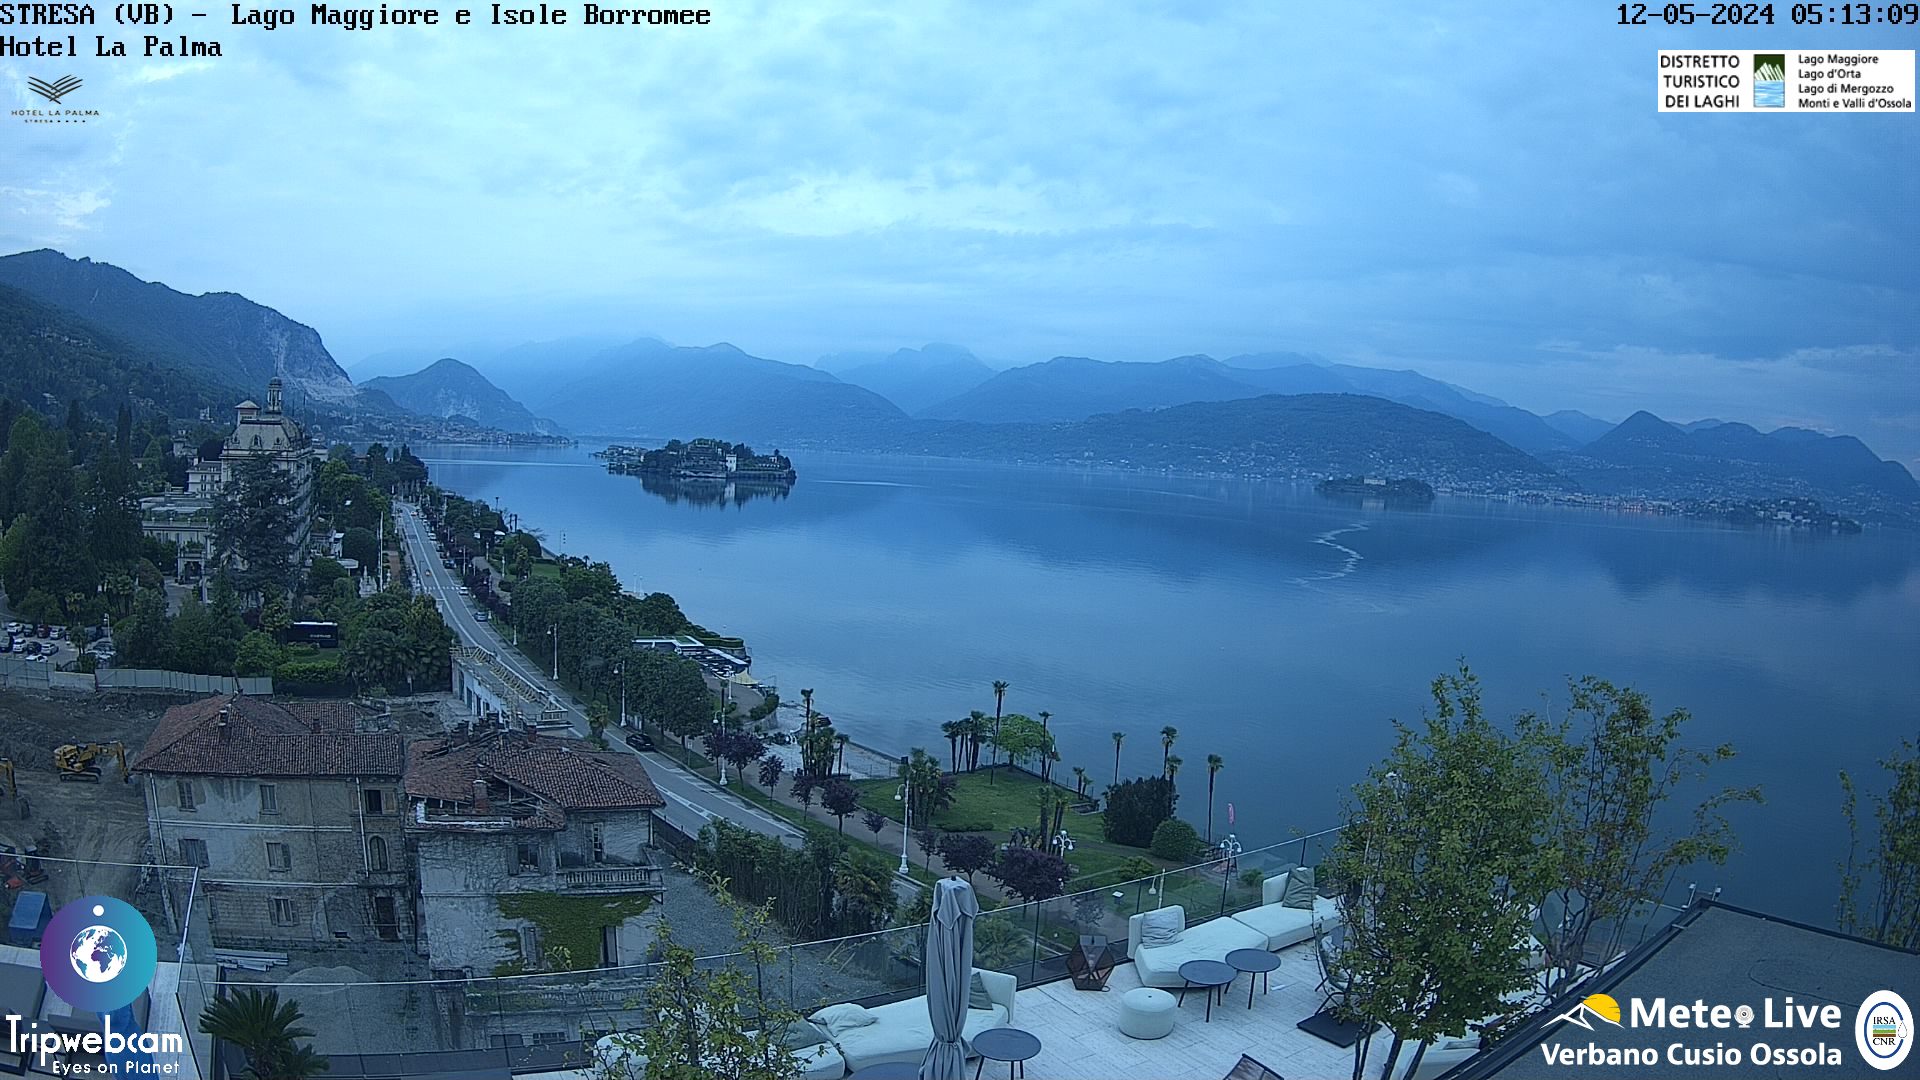 Stresa (Lago Maggiore) Tor. 06:17